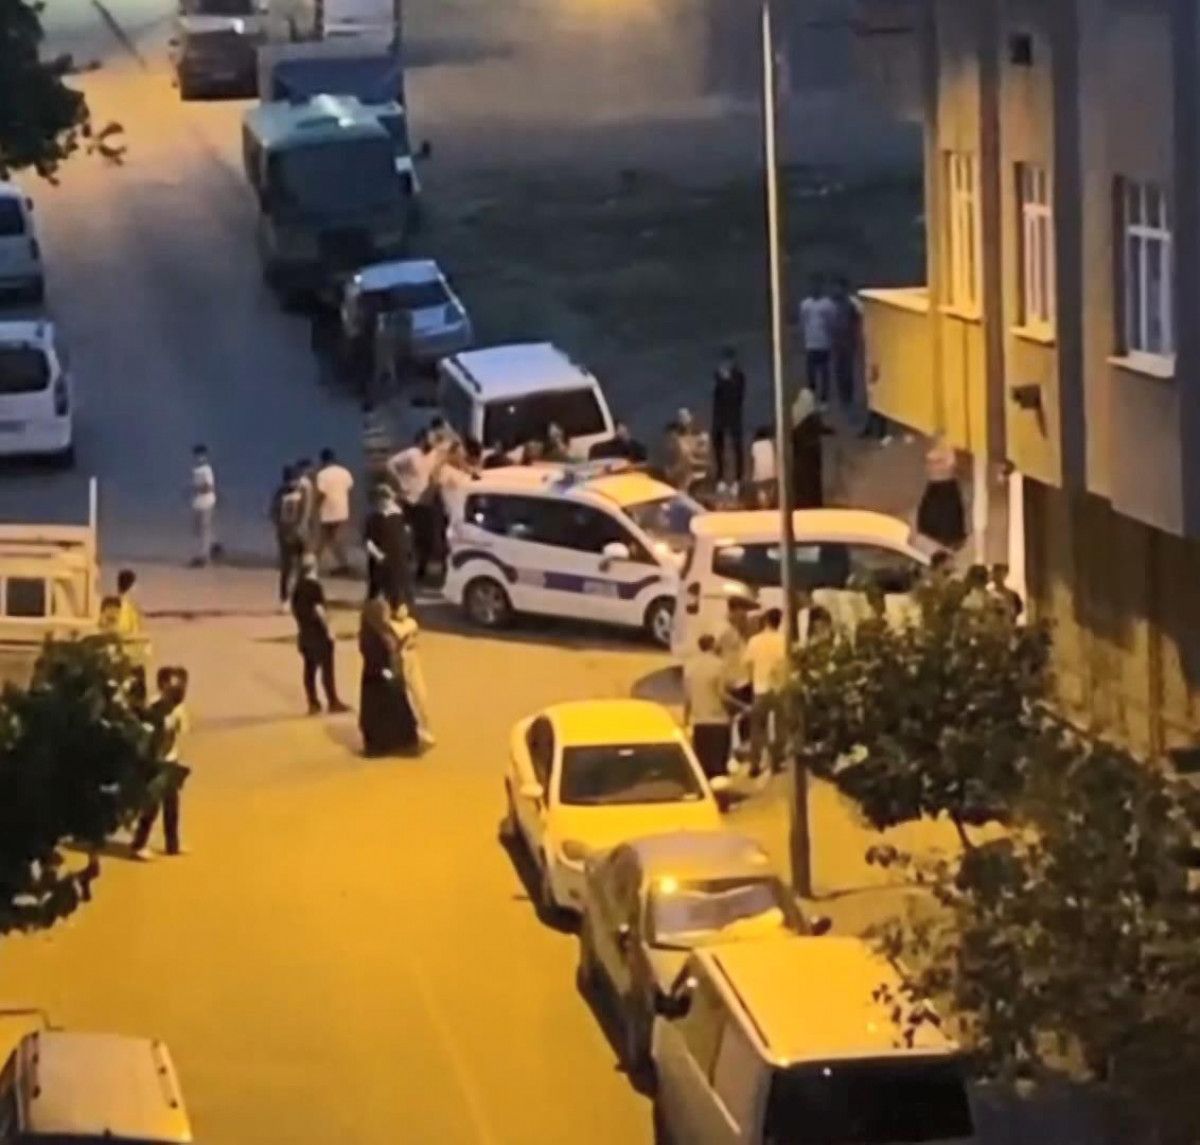 Sultangazi de çocuk kaçırıldı sanılan olay, TikTok videosu çıktı #1